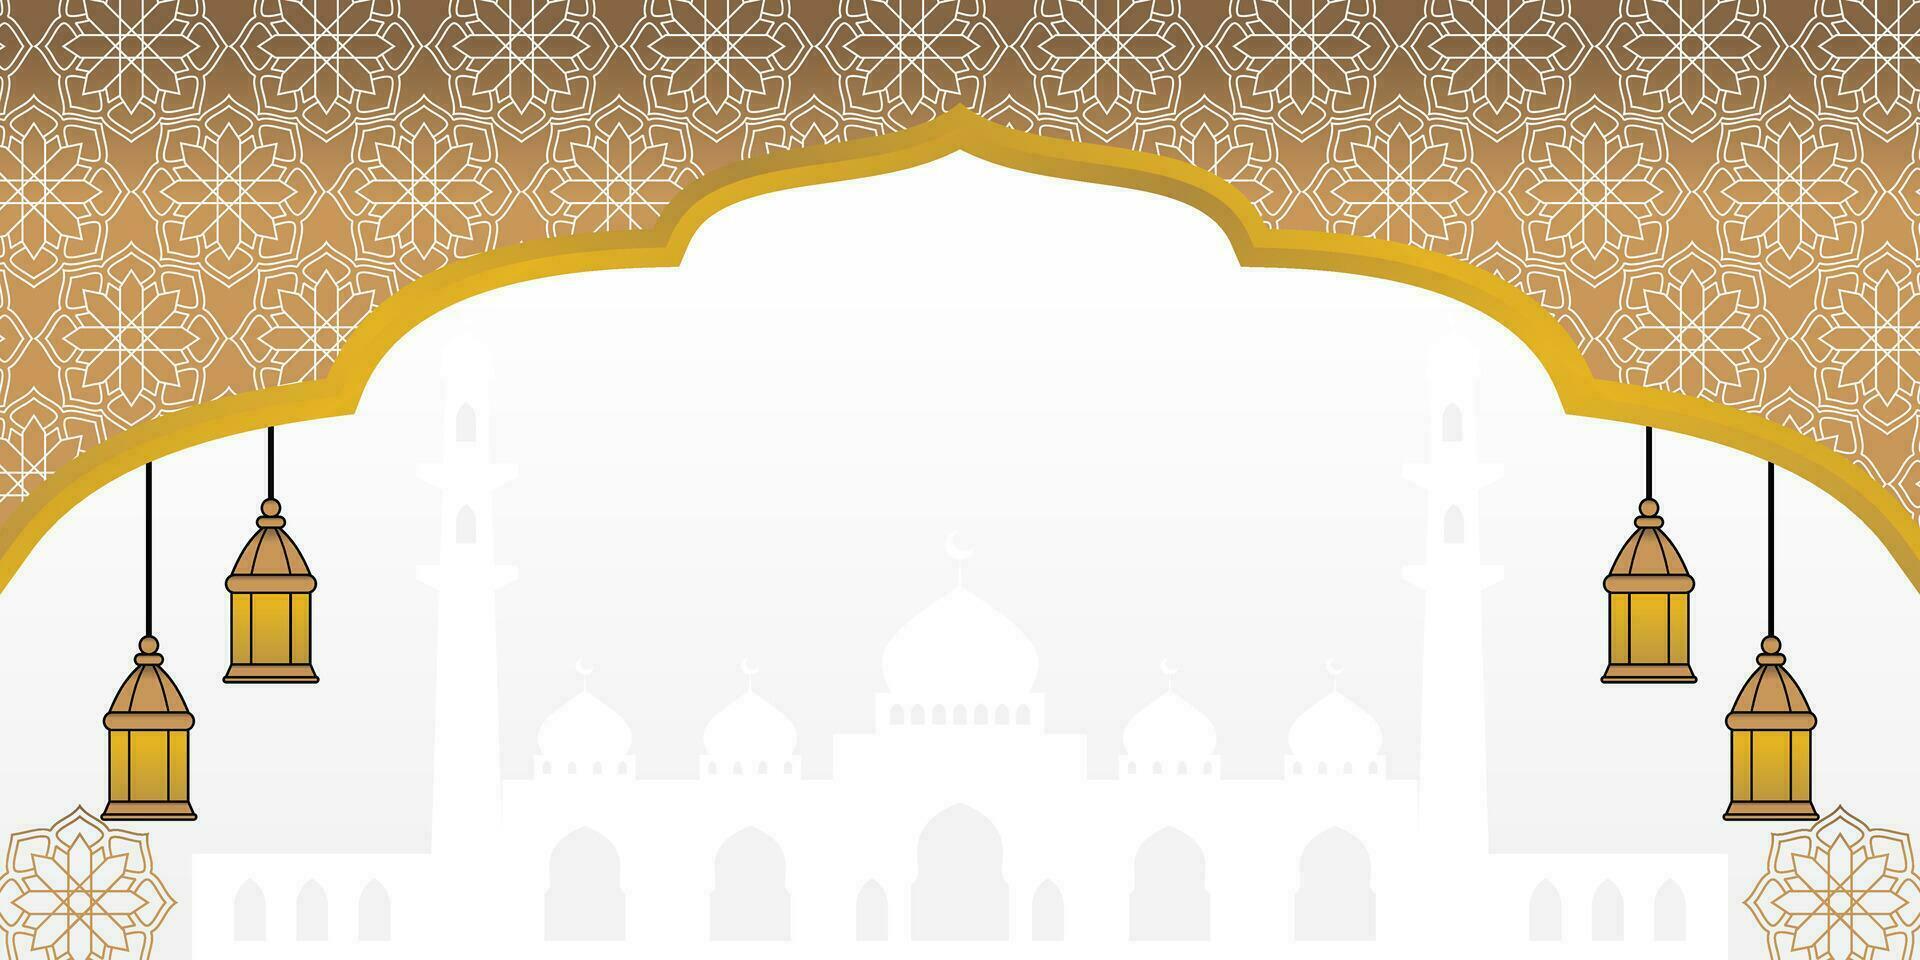 guld islamic bakgrund, med lykta prydnad, mandala och moské silhuett. vektor mall för baner, hälsning kort för islamic högtider, eid al-fitr, ramadan, eid al-adha